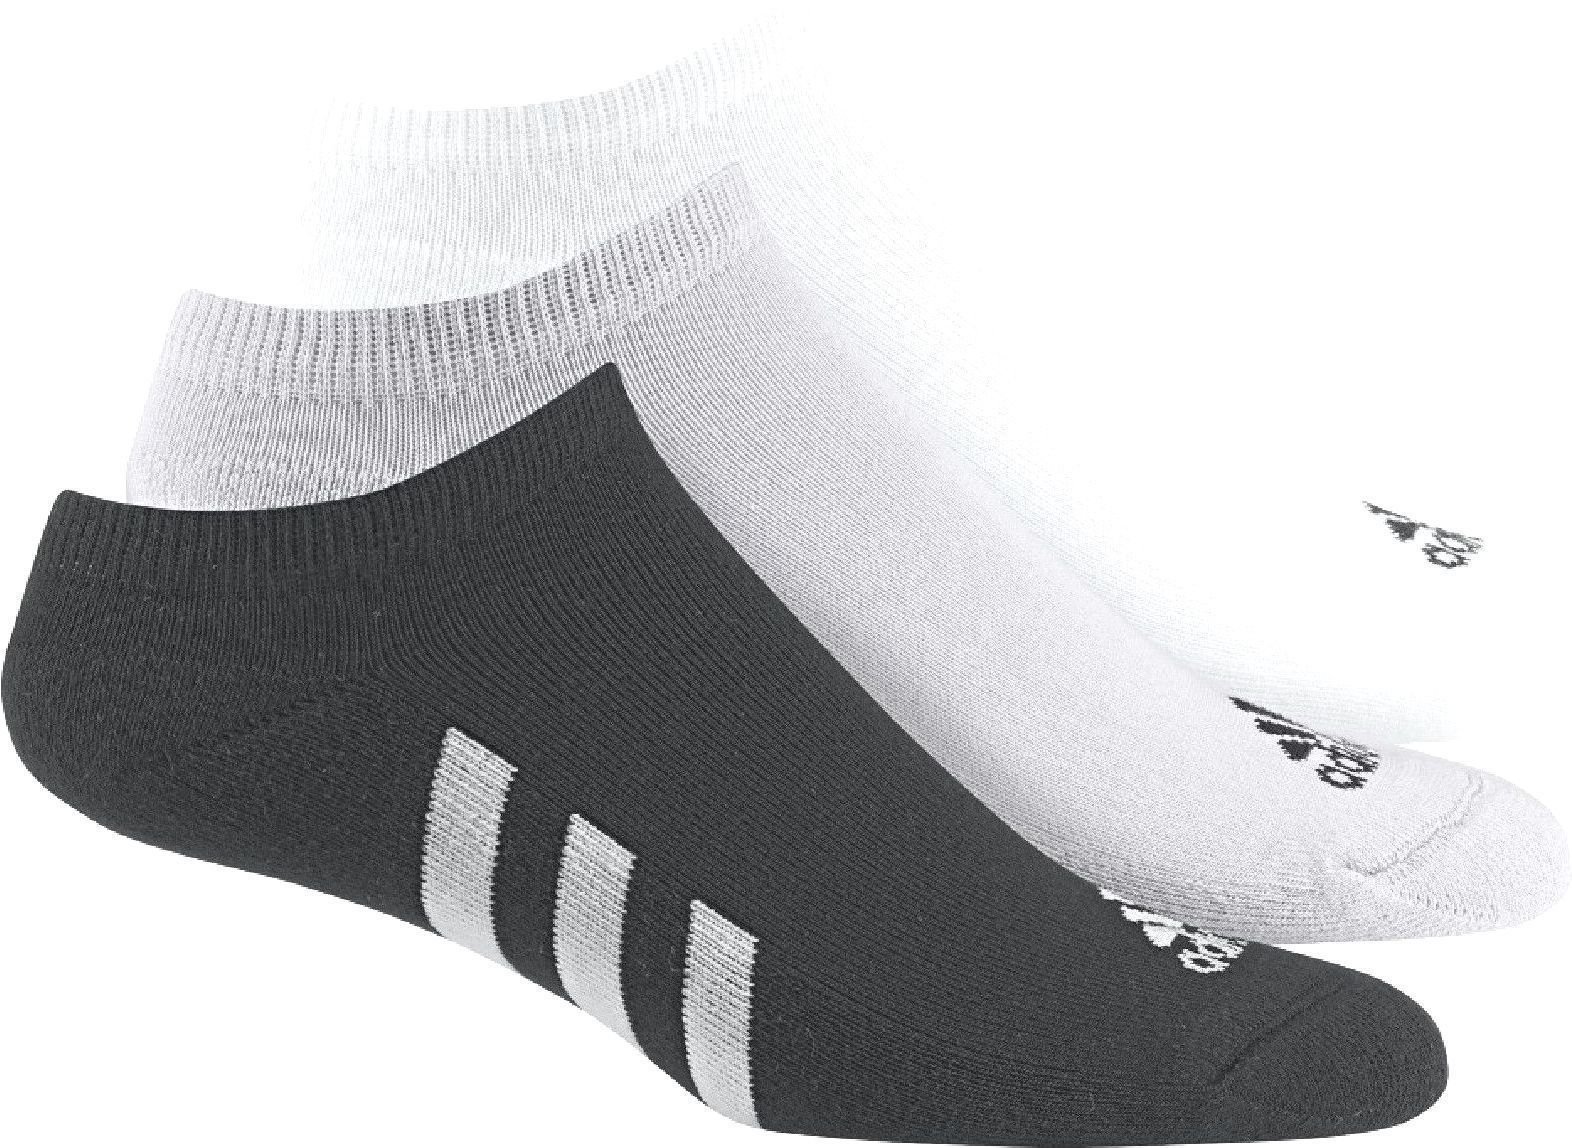 Socken Adidas 3-Pack No Show BK/GR/WH 10-13